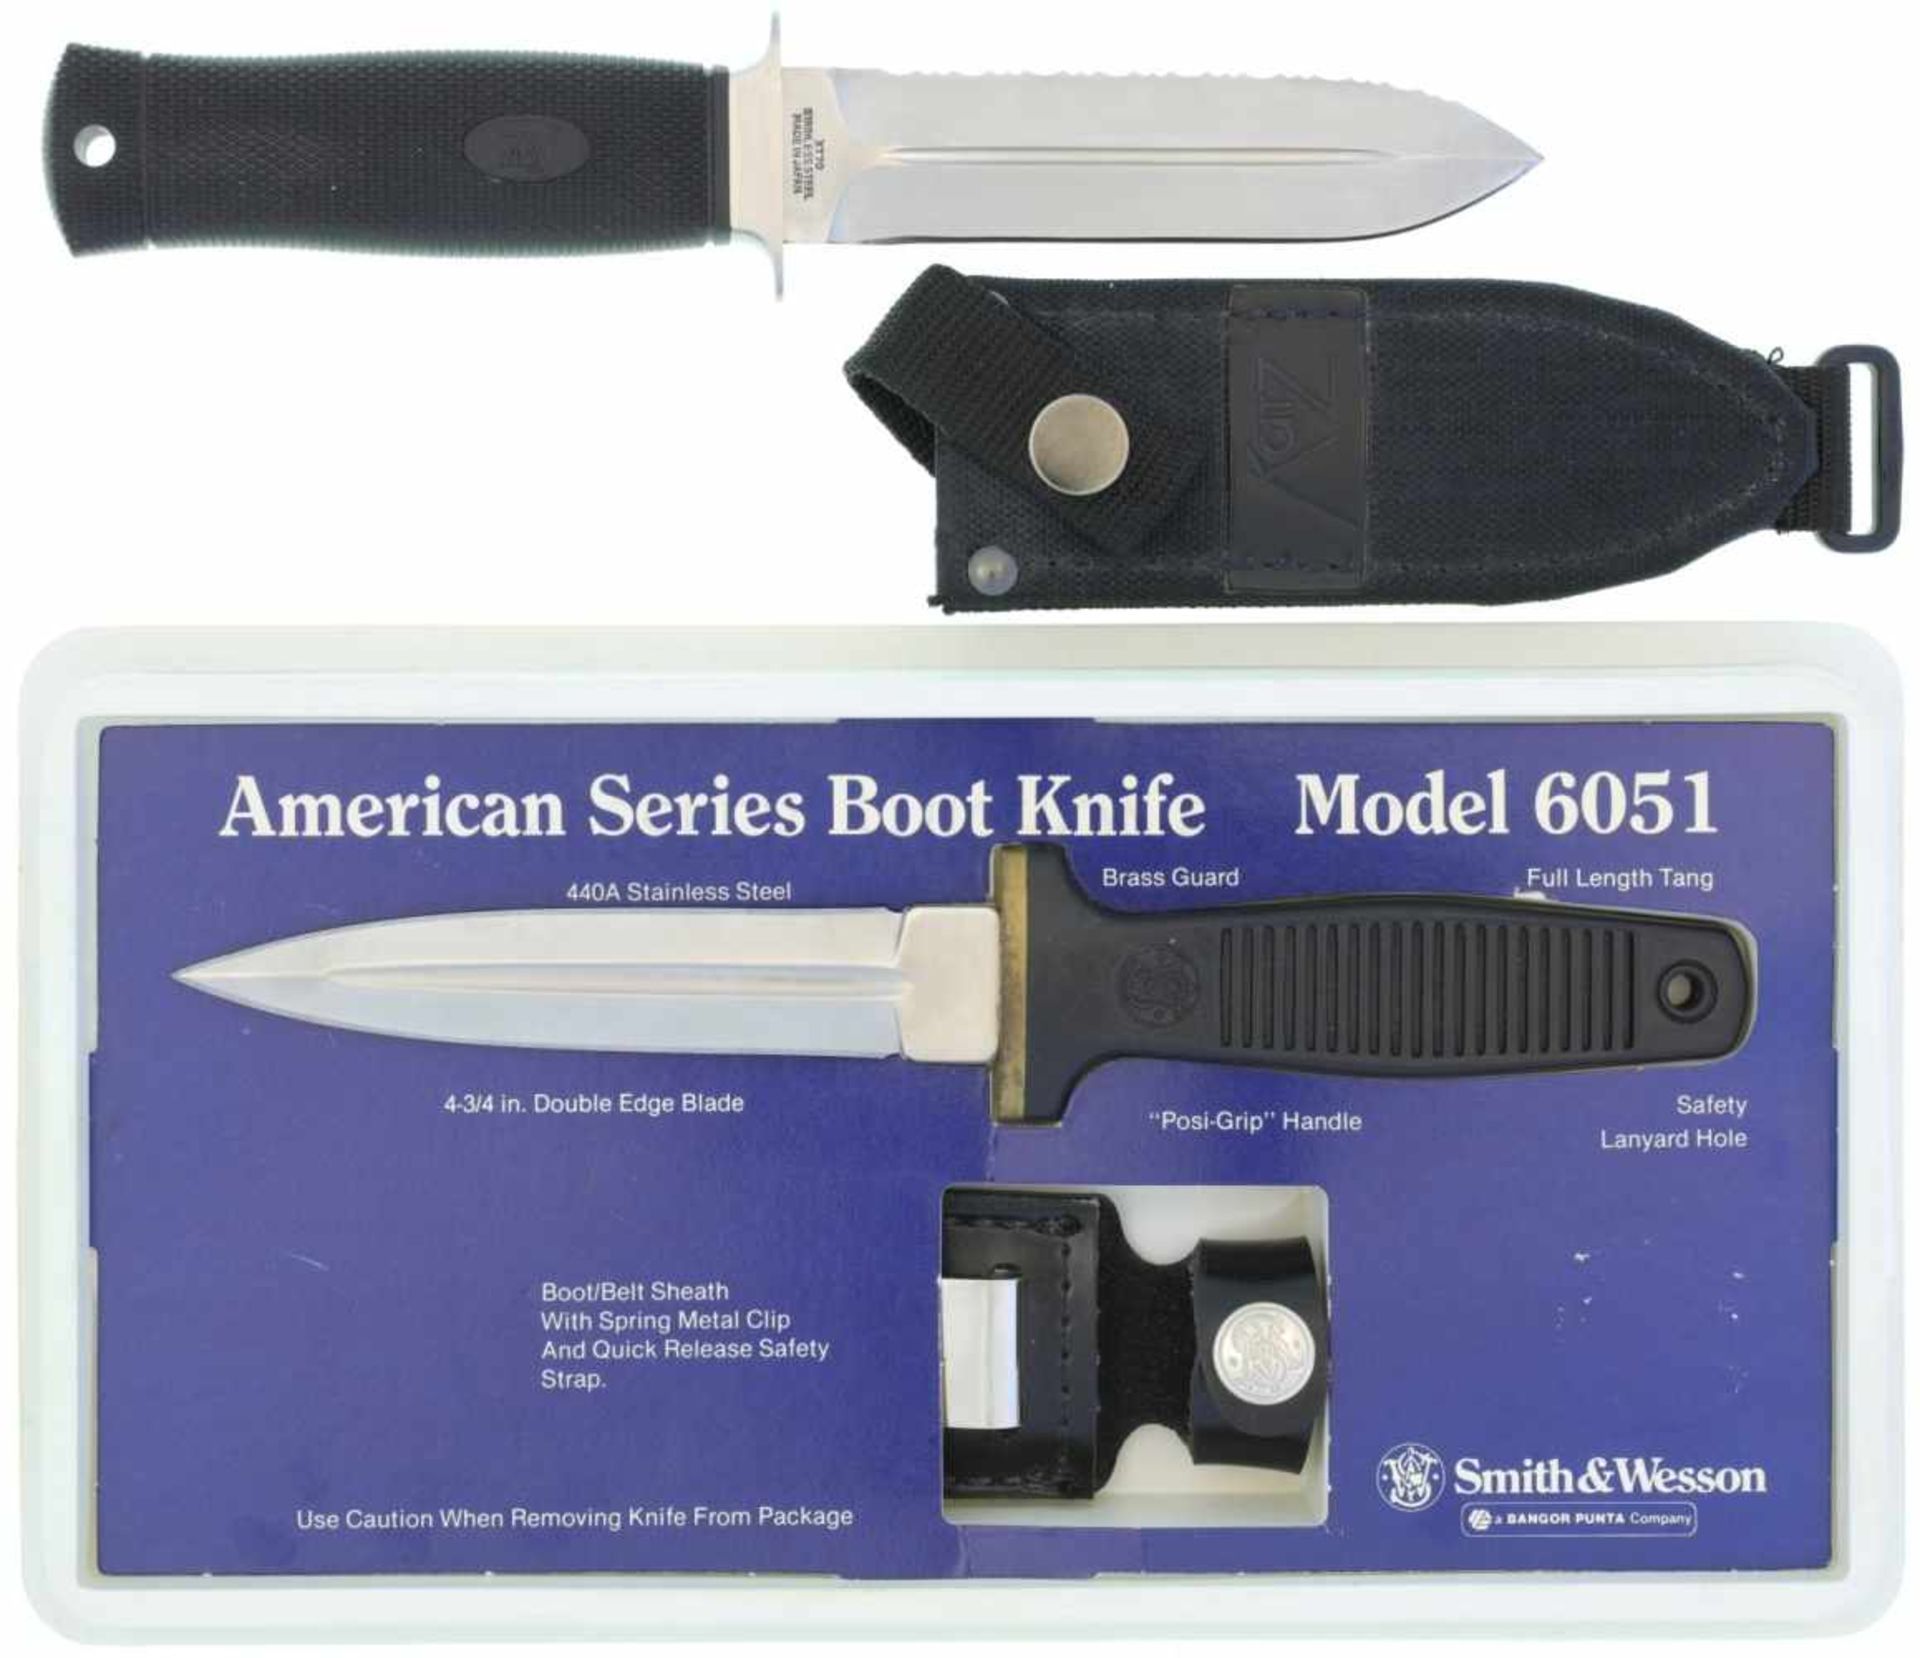 Konvolut von 2 Stiefeldolchen 1. S&W Model 6051 Boot Knife, KL 109mm, TL 234mm, symmetrische